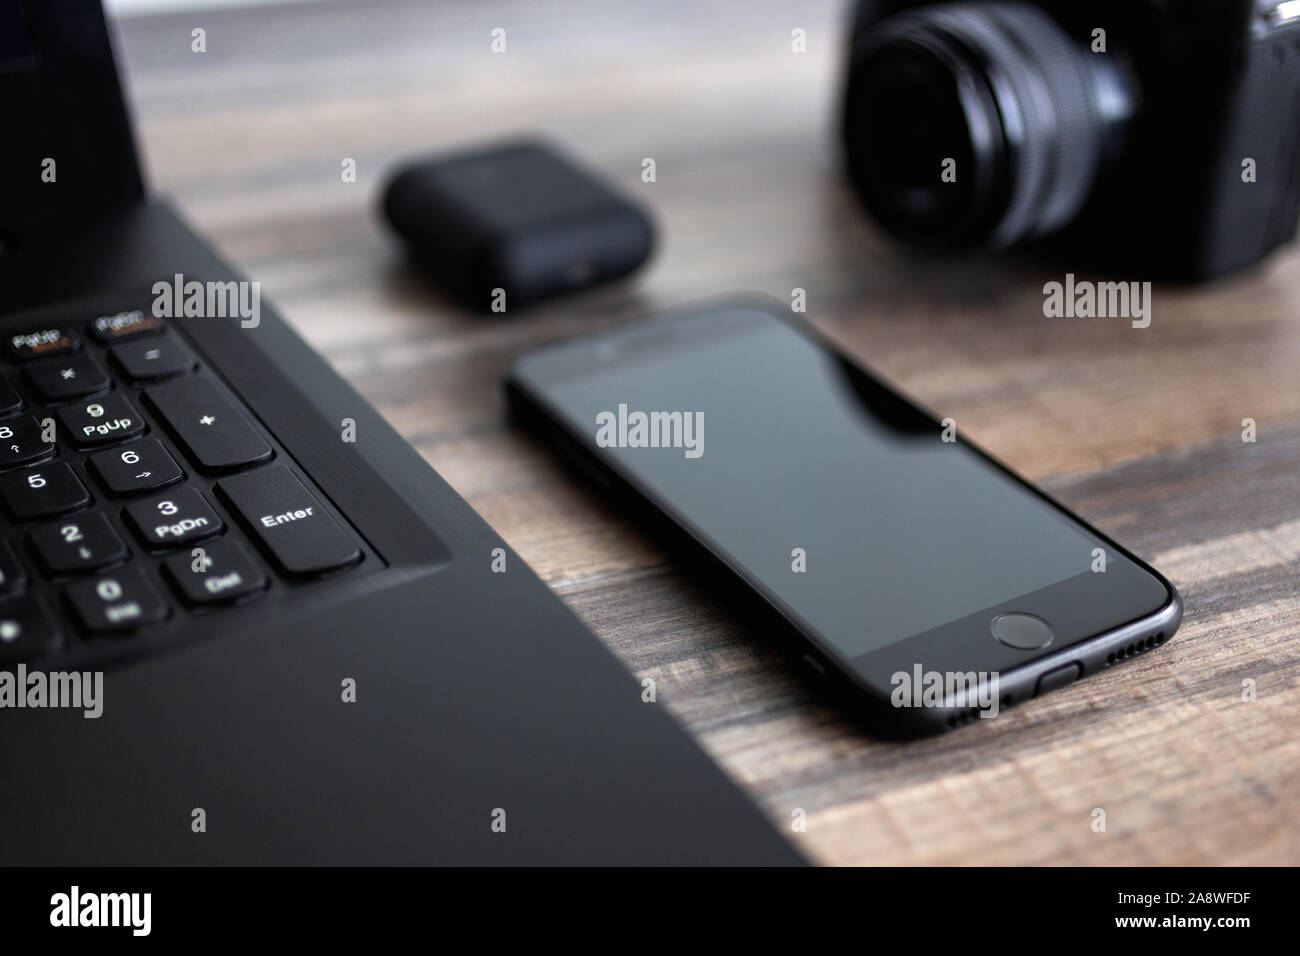 Photographe ou stock photography concept, appareil photo numérique et ordinateur portable noir près de téléphone sur 24 workstation Banque D'Images